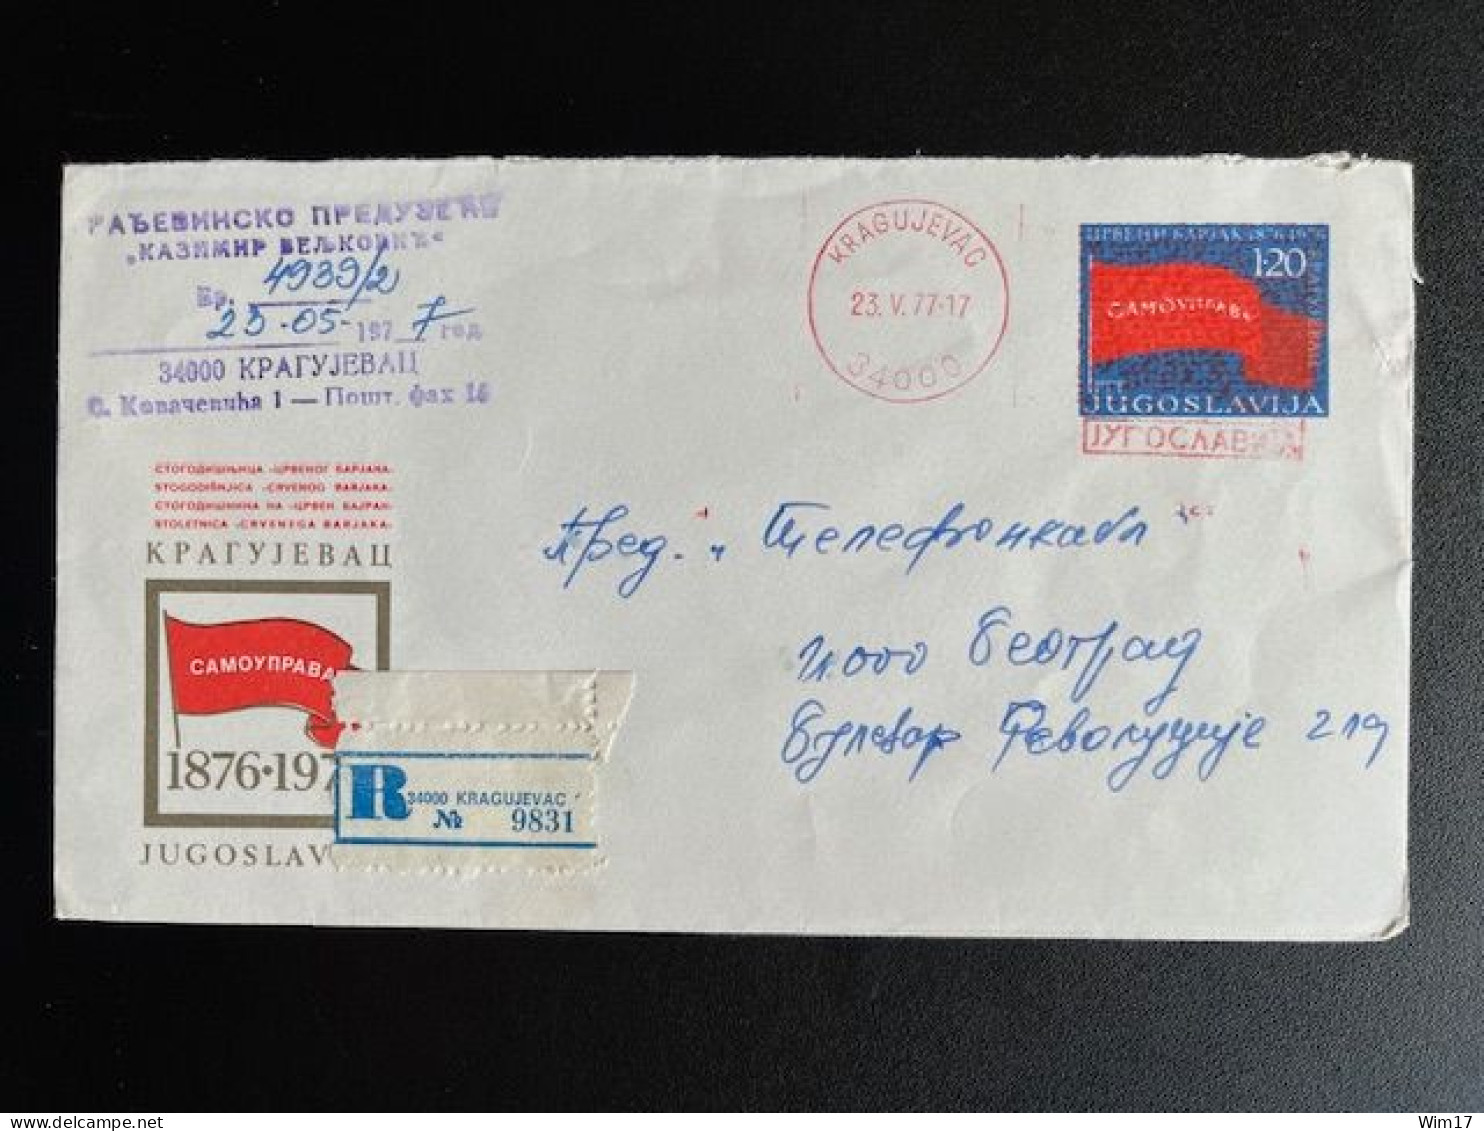 JUGOSLAVIJA YUGOSLAVIA 1977 REGISTERED LETTER KRAGUJEVAC TO BELGRADE BEOGRAD 23-05-1977 - Lettres & Documents